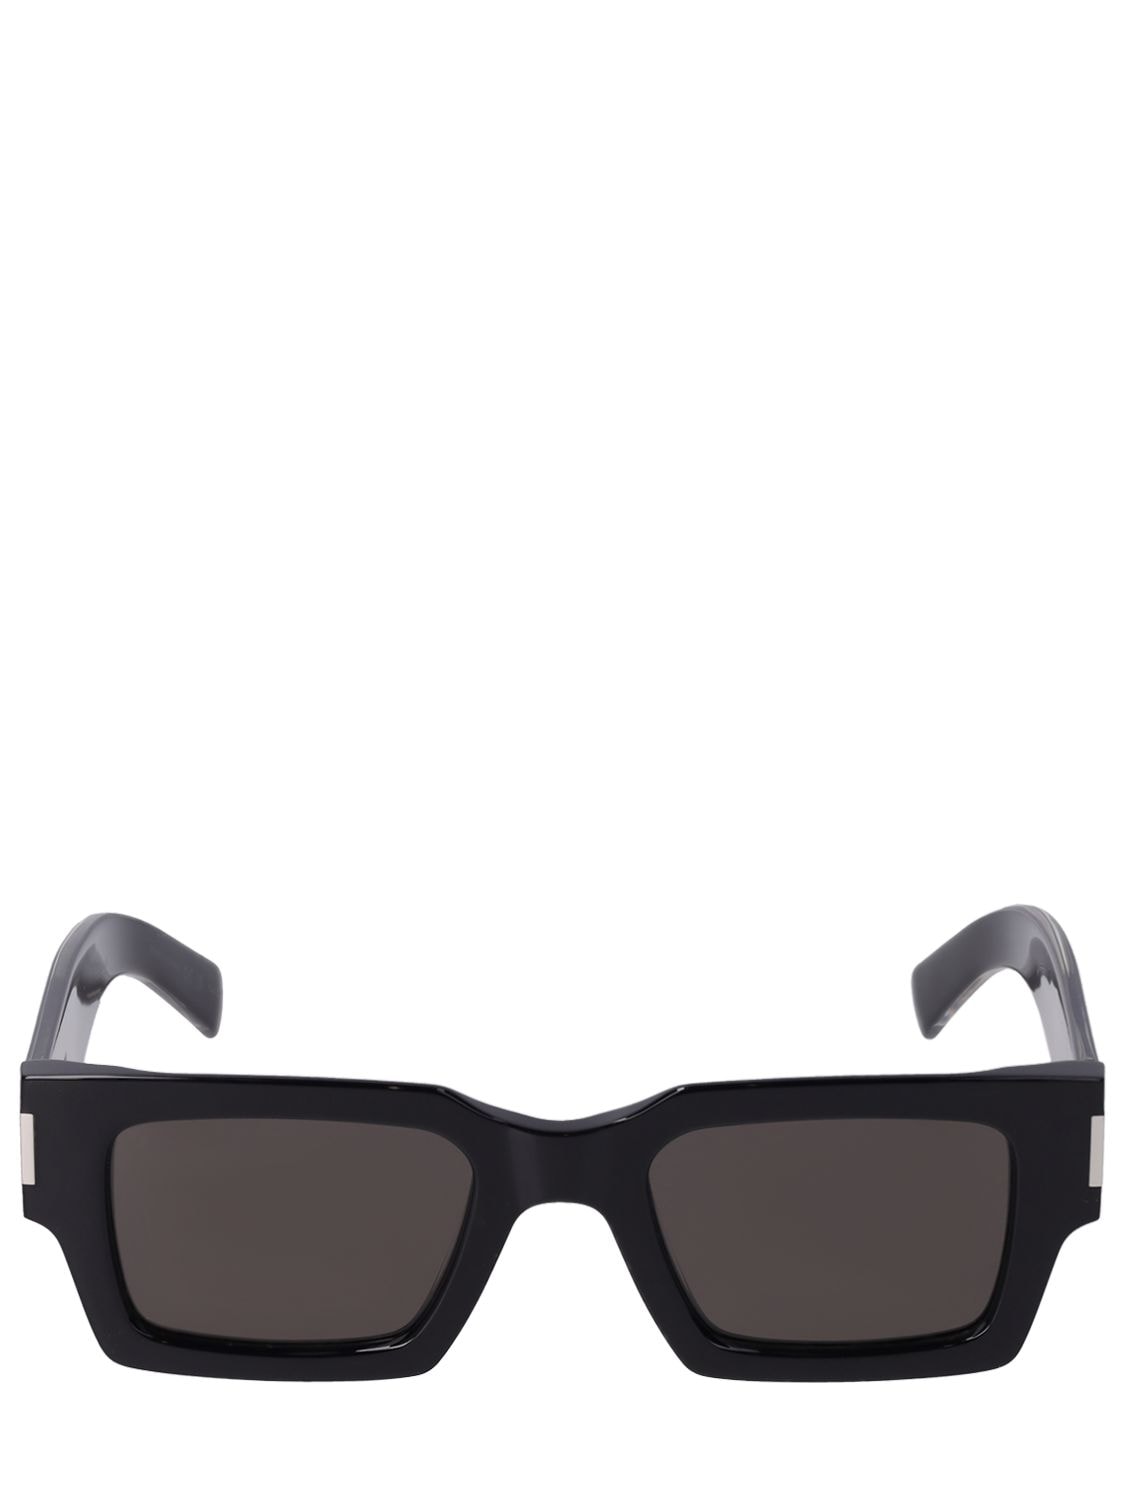 Shop Saint Laurent Sl 572 Acetate Sunglasses In Black